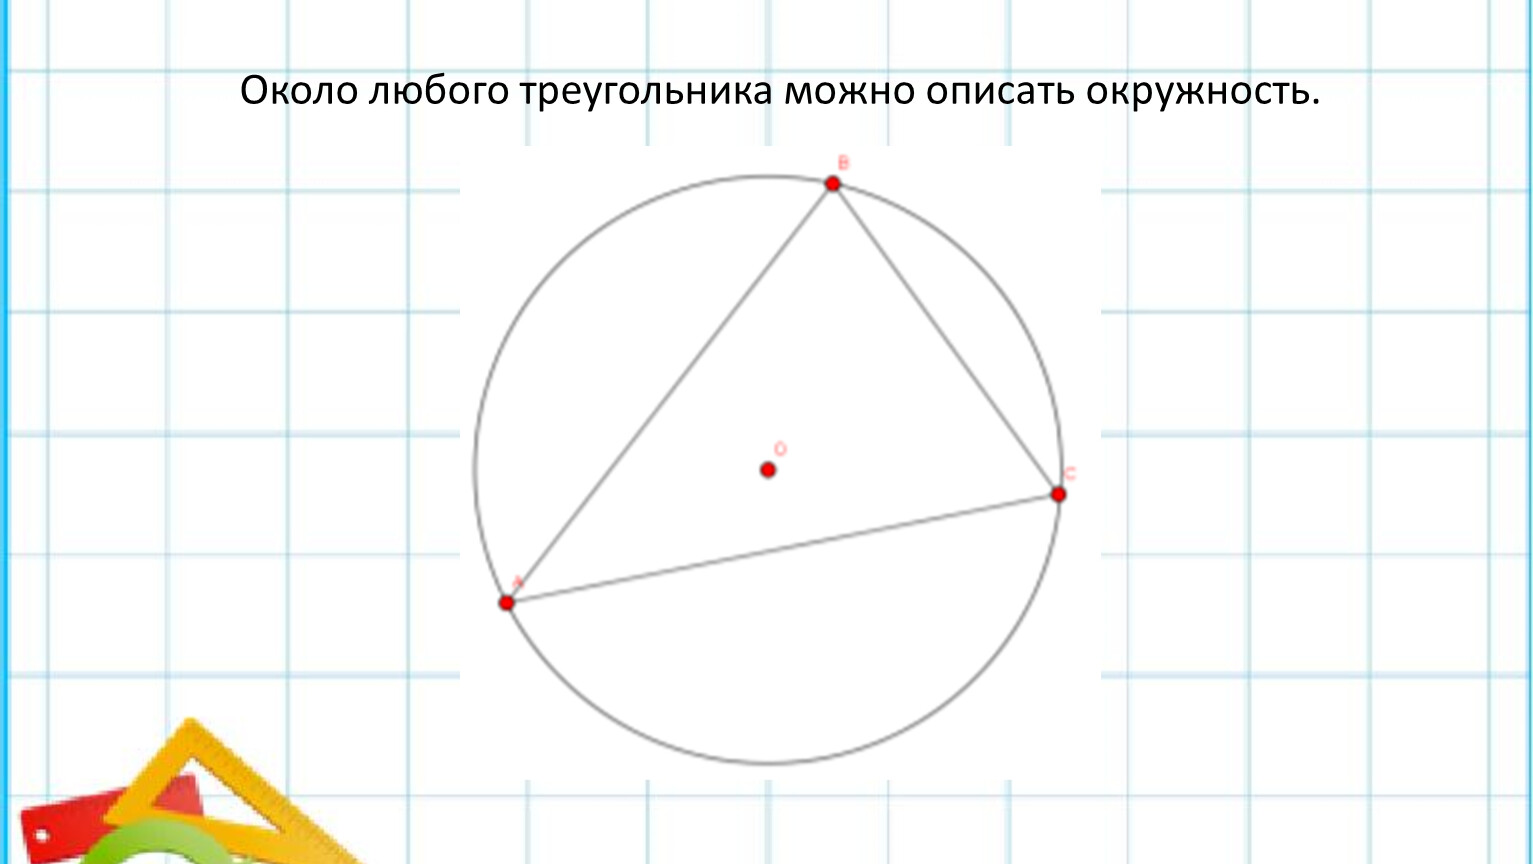 Вокруг любого треугольника можно провести окружность. Окружность рисунок. Около любого треугольника можно описать окружность. Вокруг любого треугольника можно описать окружность. Рисунок. Вокруг треугольника можно описать окружность.